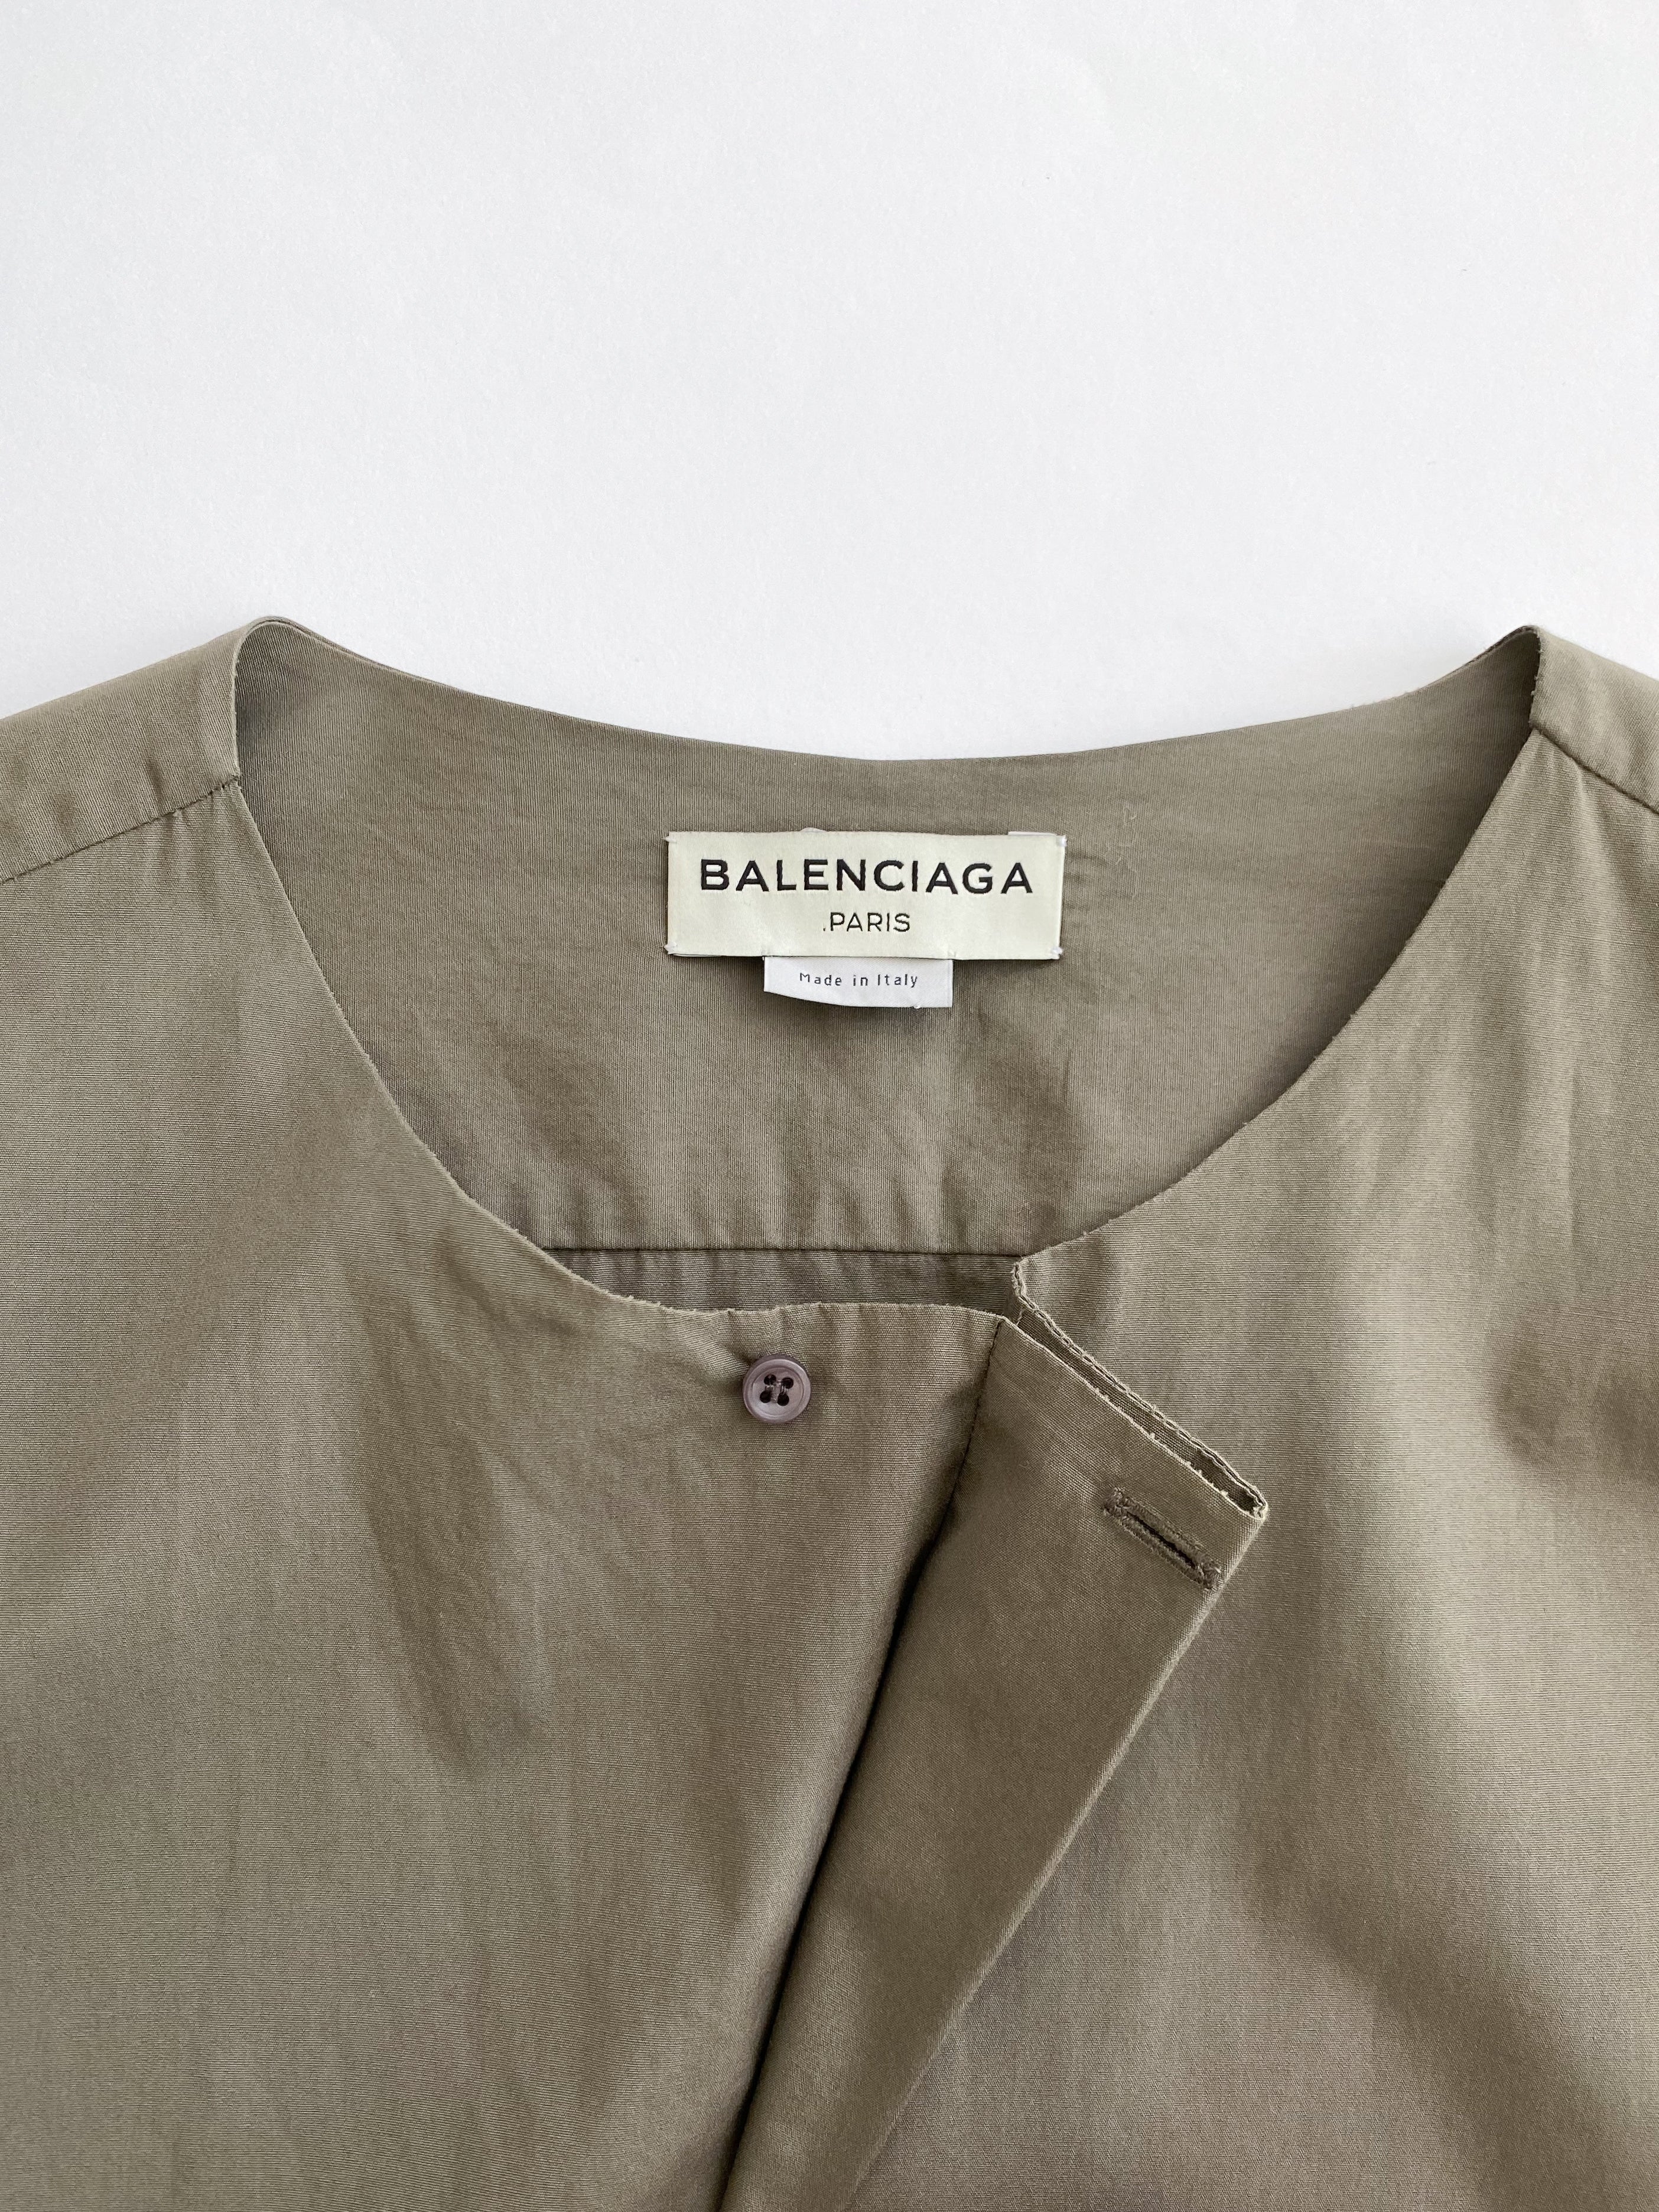 Balenciaga cotton blouse